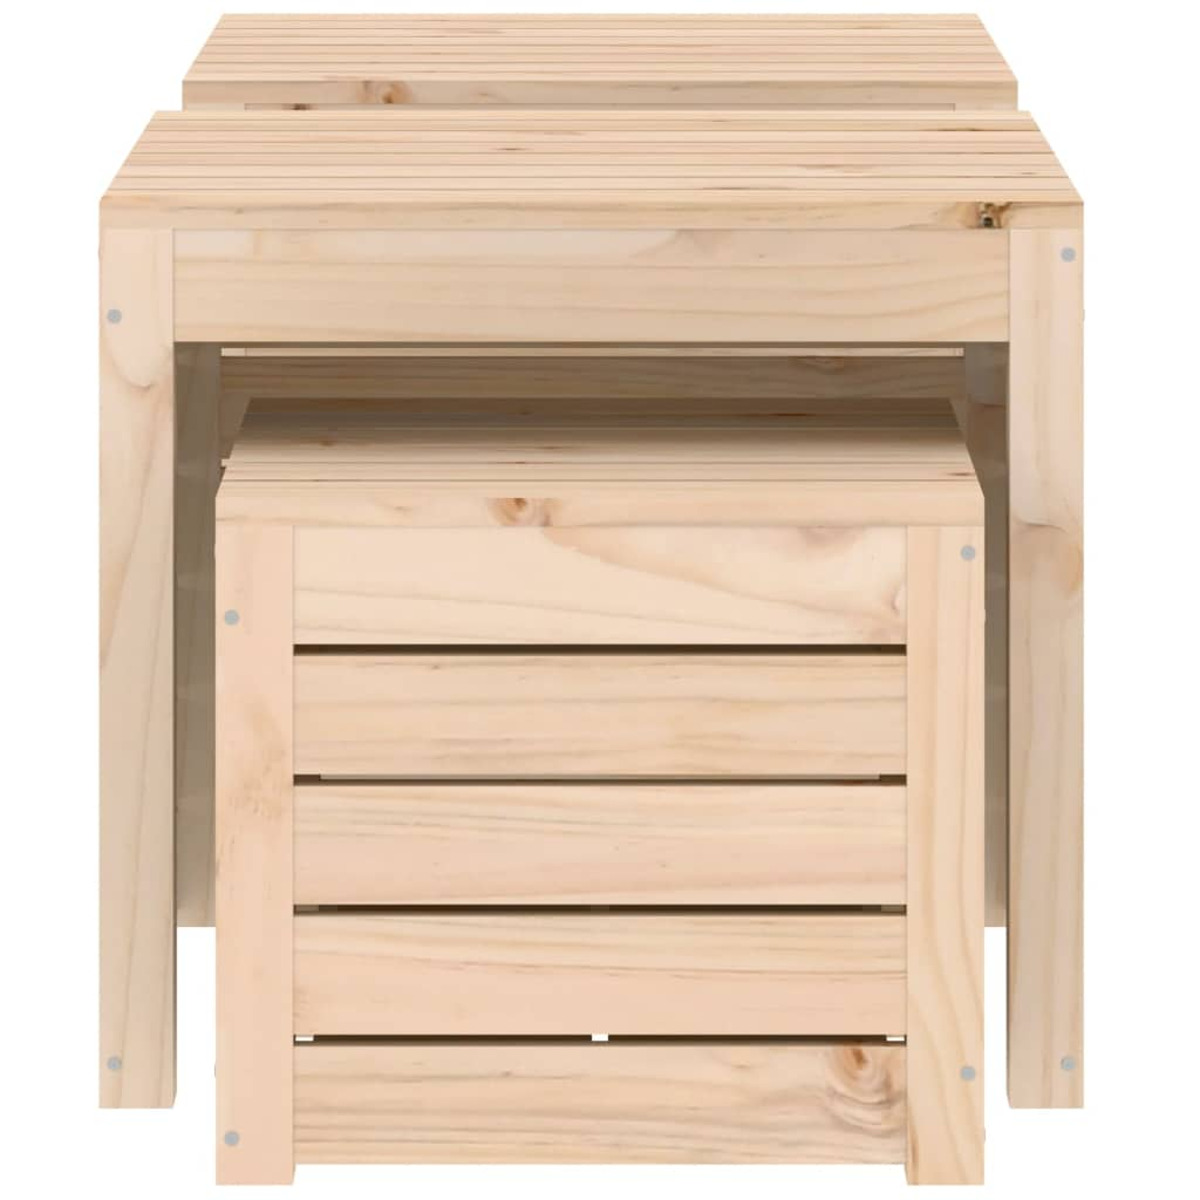 VIDAXL 823955 Aufbewahrungsbox für den Holzfarbe Garten